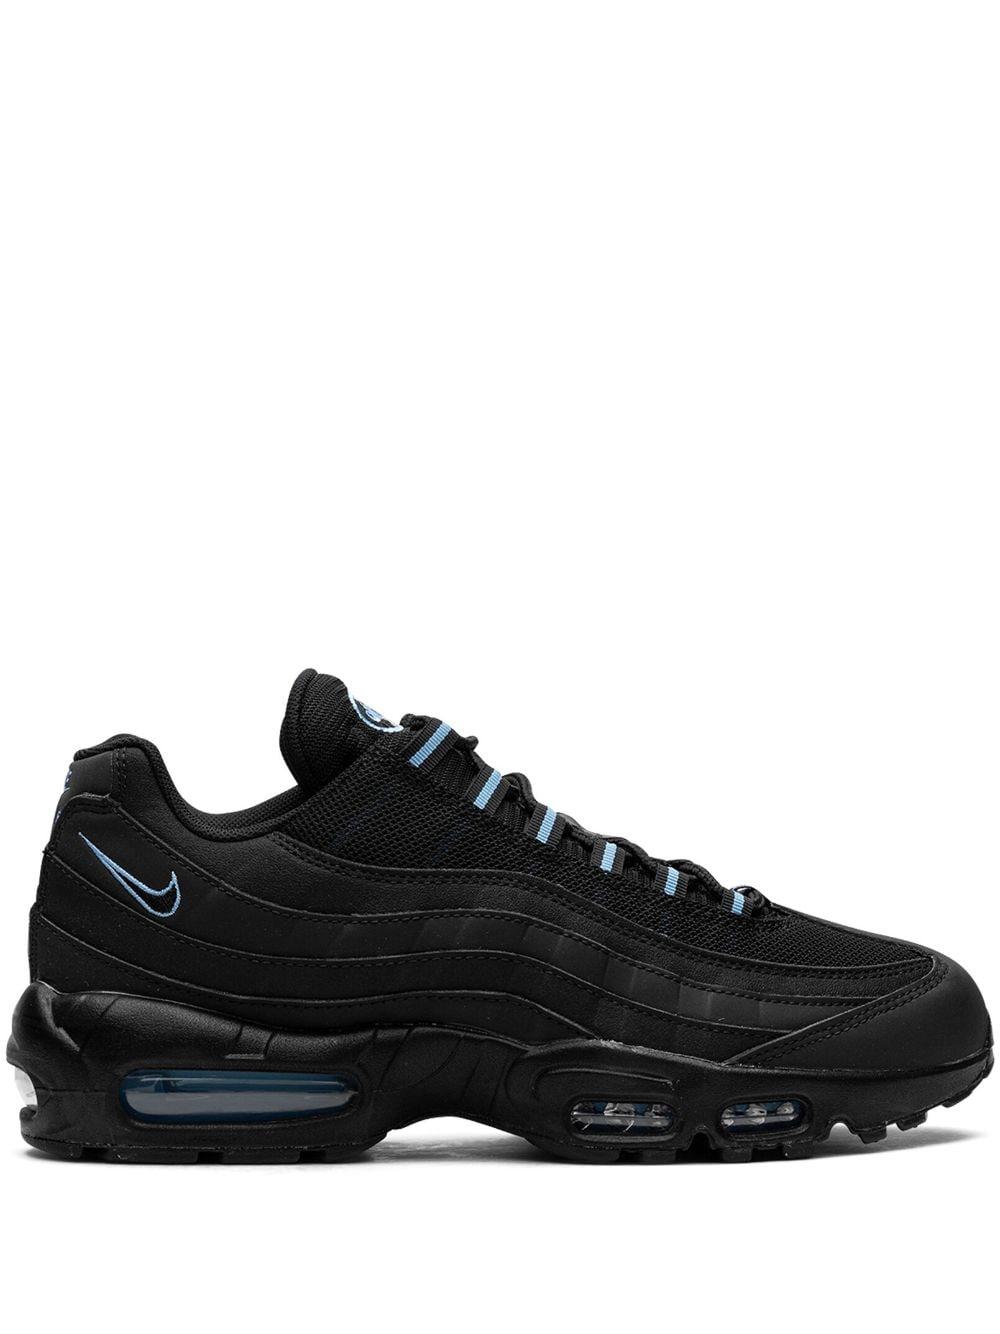 Nike Air Max 95 "black/university Blue" Sneakers for Men |